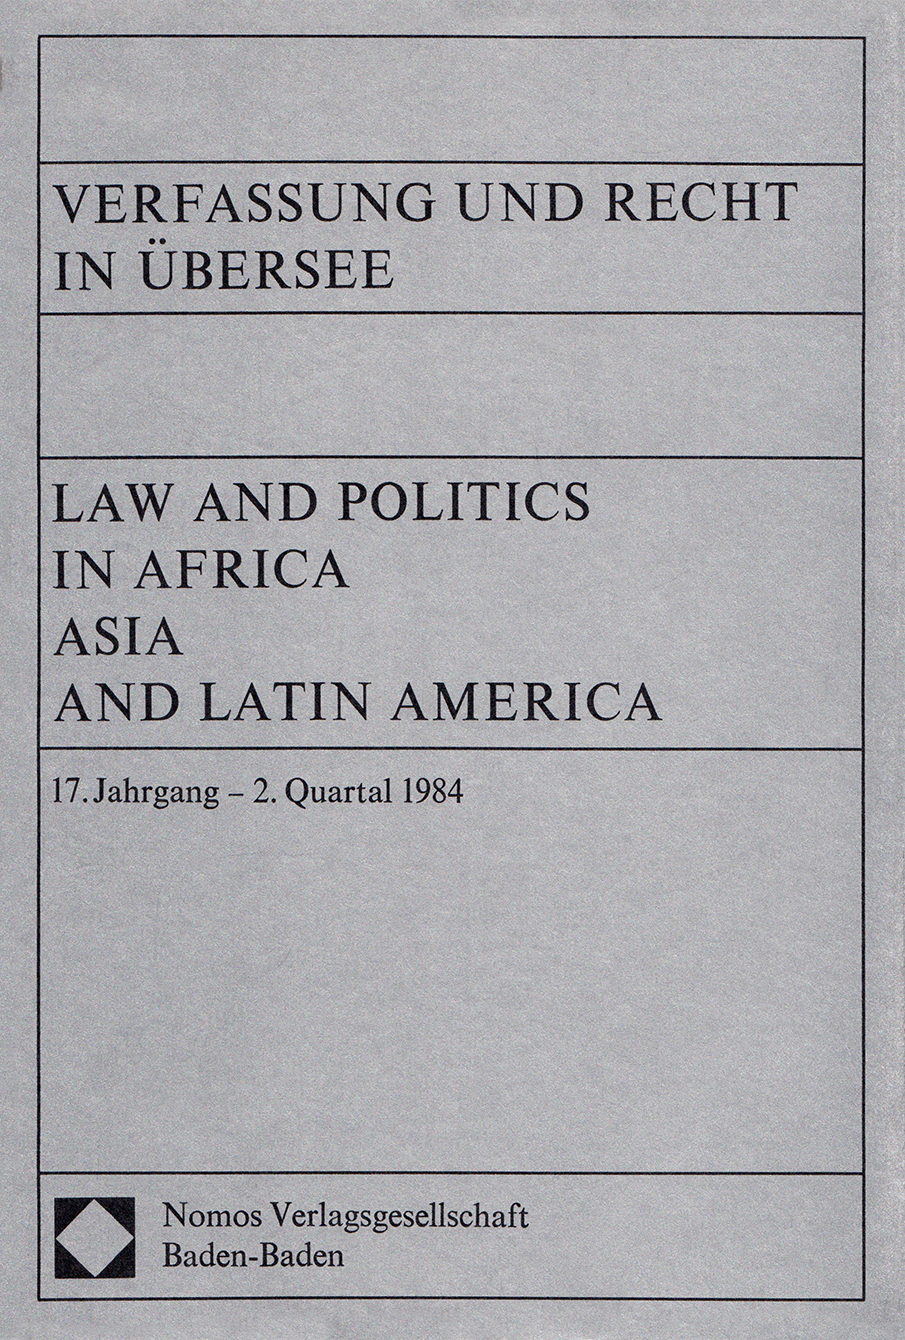 Verfassung und Recht in Übersee, issue 2. Quartal 1984, vol. 17, no. 2, 1984, p. 195-211;